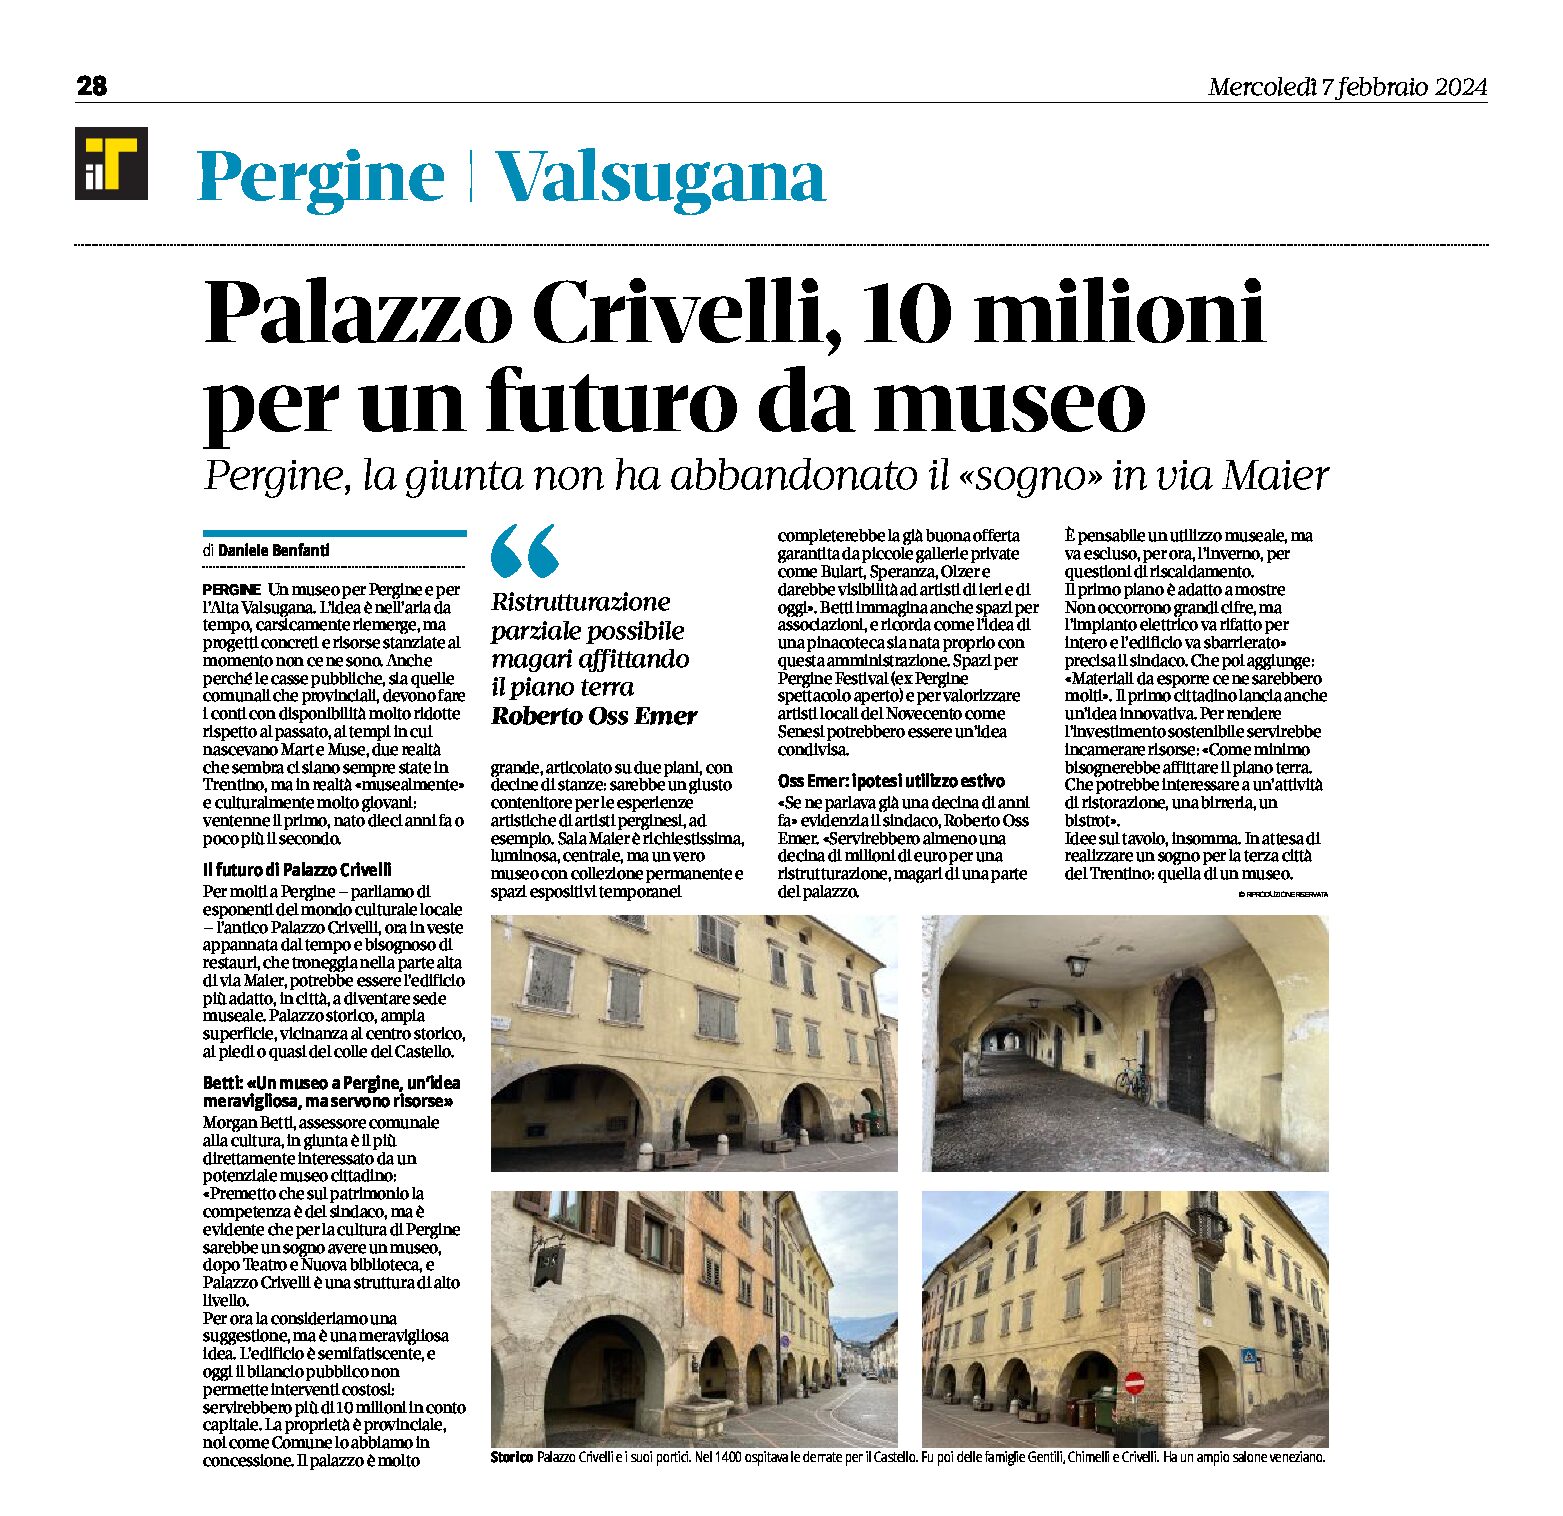 Pergine, Palazzo Crivelli: 10 milioni per un futuro da museo